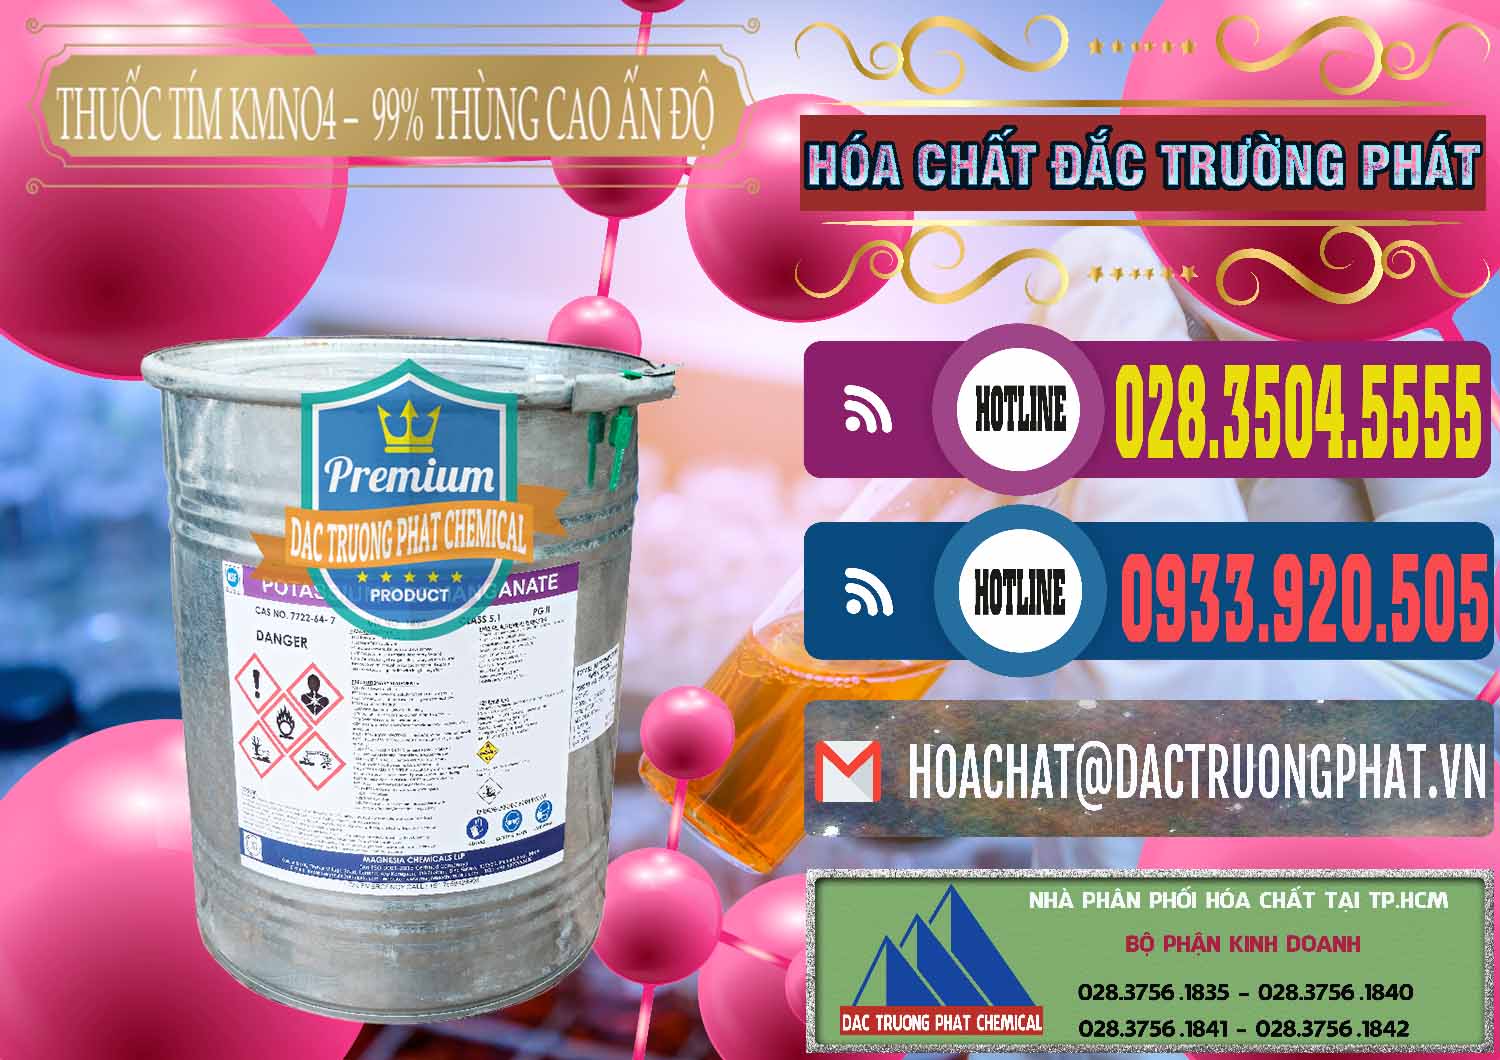 Chuyên nhập khẩu - bán Thuốc Tím - KMNO4 Thùng Cao 99% Magnesia Chemicals Ấn Độ India - 0164 - Nhà cung cấp và kinh doanh hóa chất tại TP.HCM - muabanhoachat.com.vn